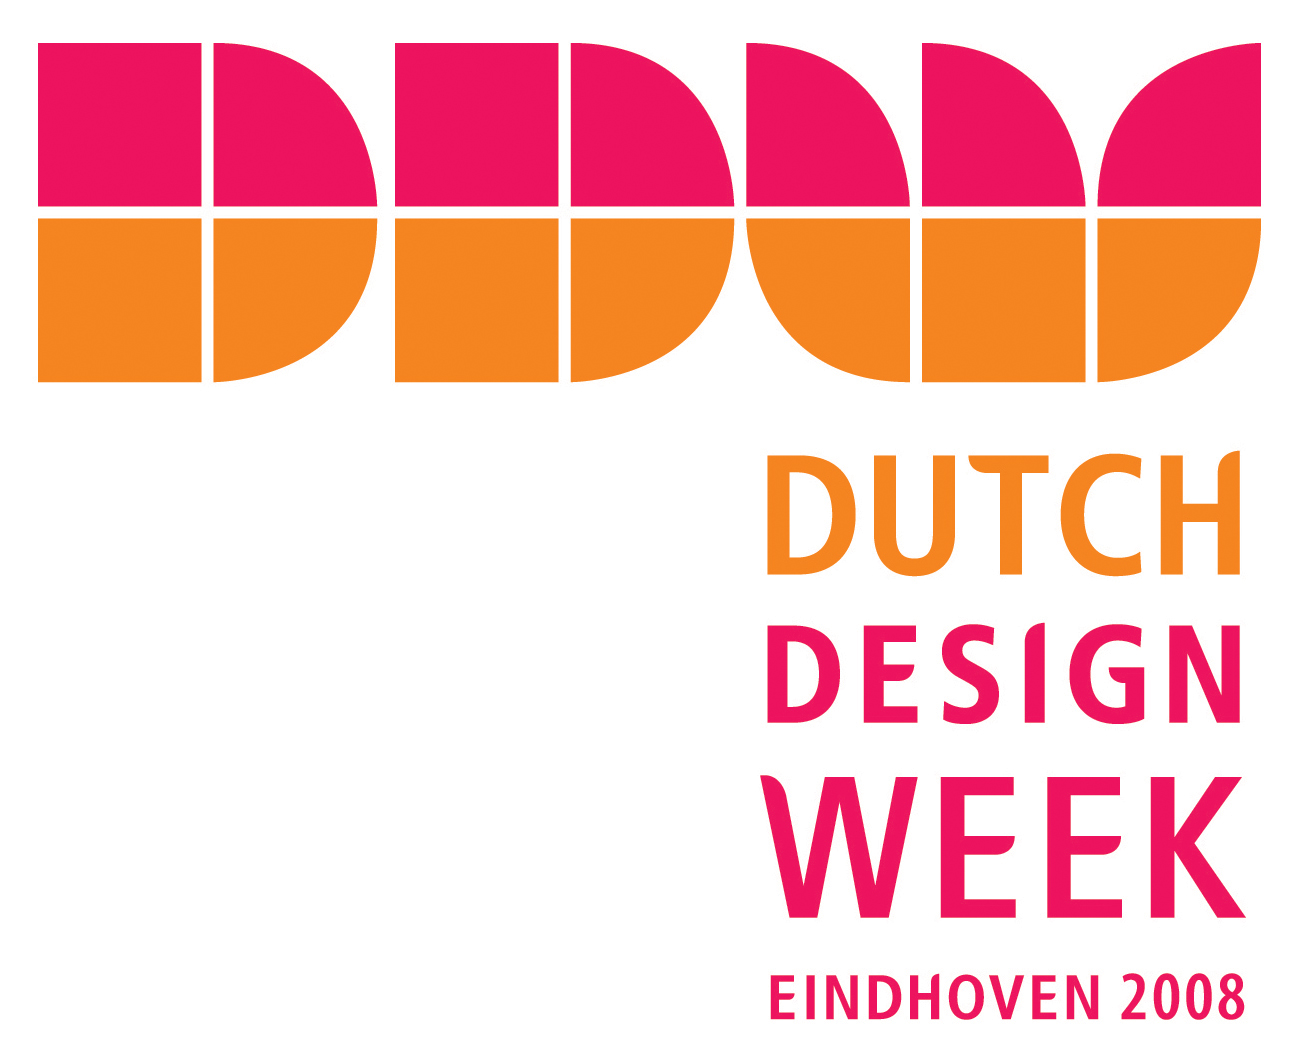 ddw, dutch design week, 2008, Eindhoven